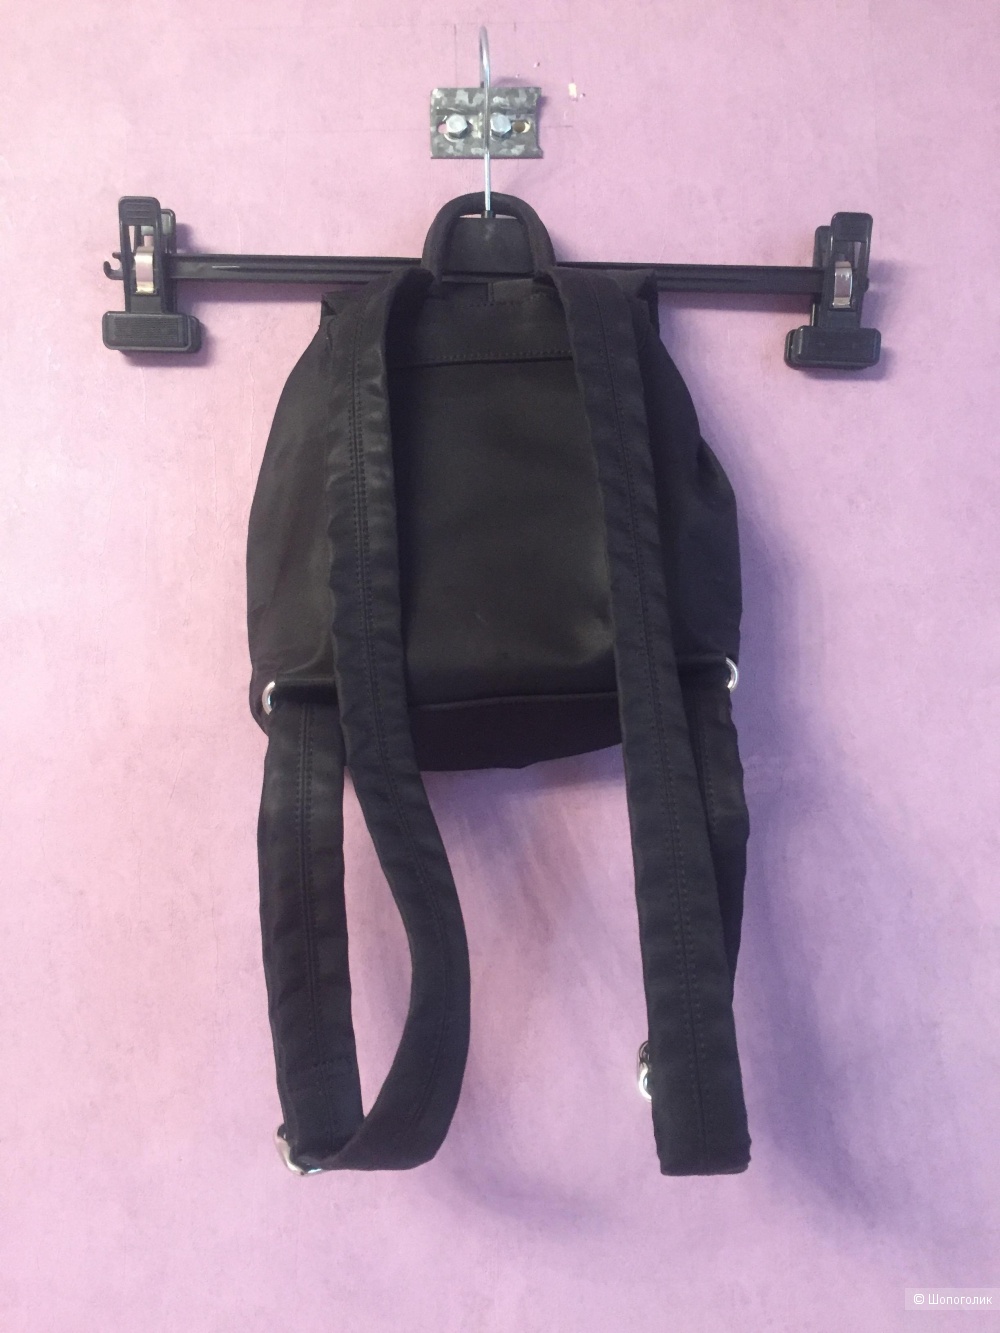 Сумочка mini + рюкзак »Esprit»